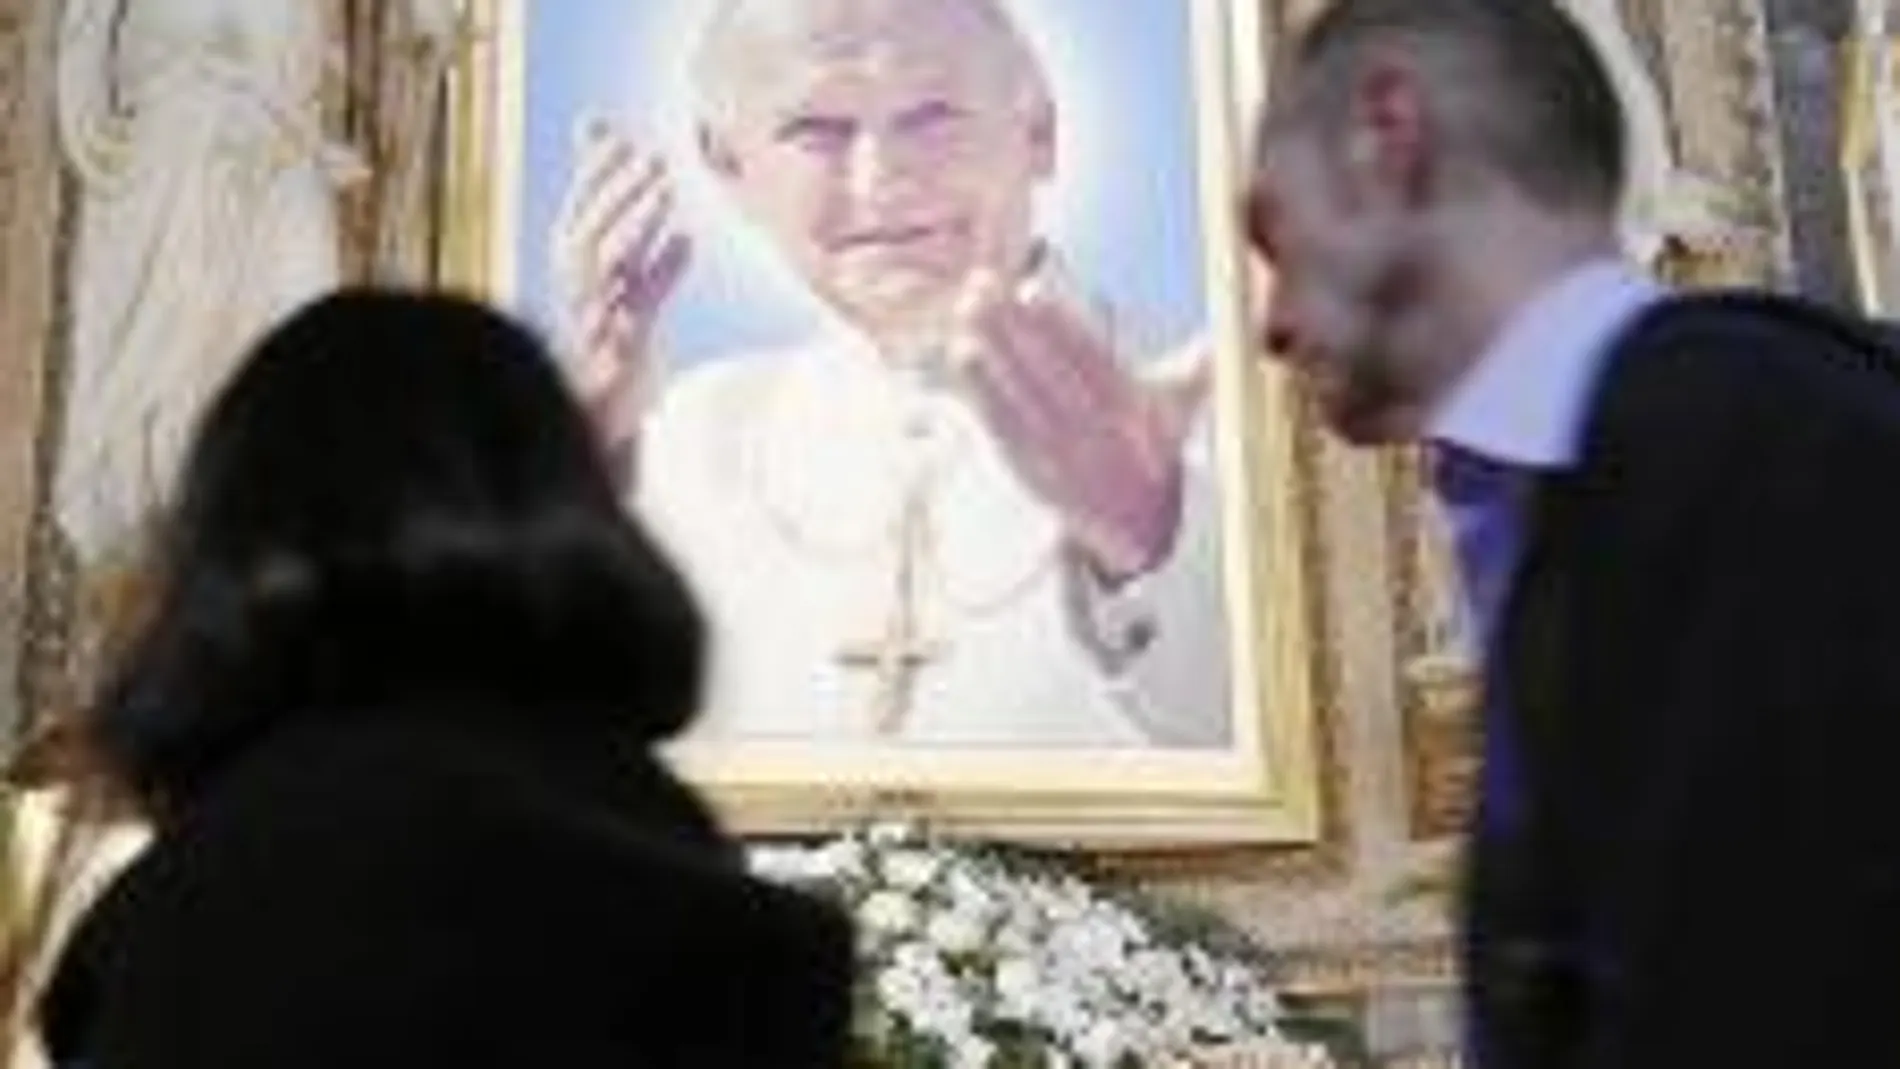 Varios fieles pasan frente a una imagen del Pontífice Juan Pablo II, situada en el altar de una iglesia en el centro de la ciudad de Roma.